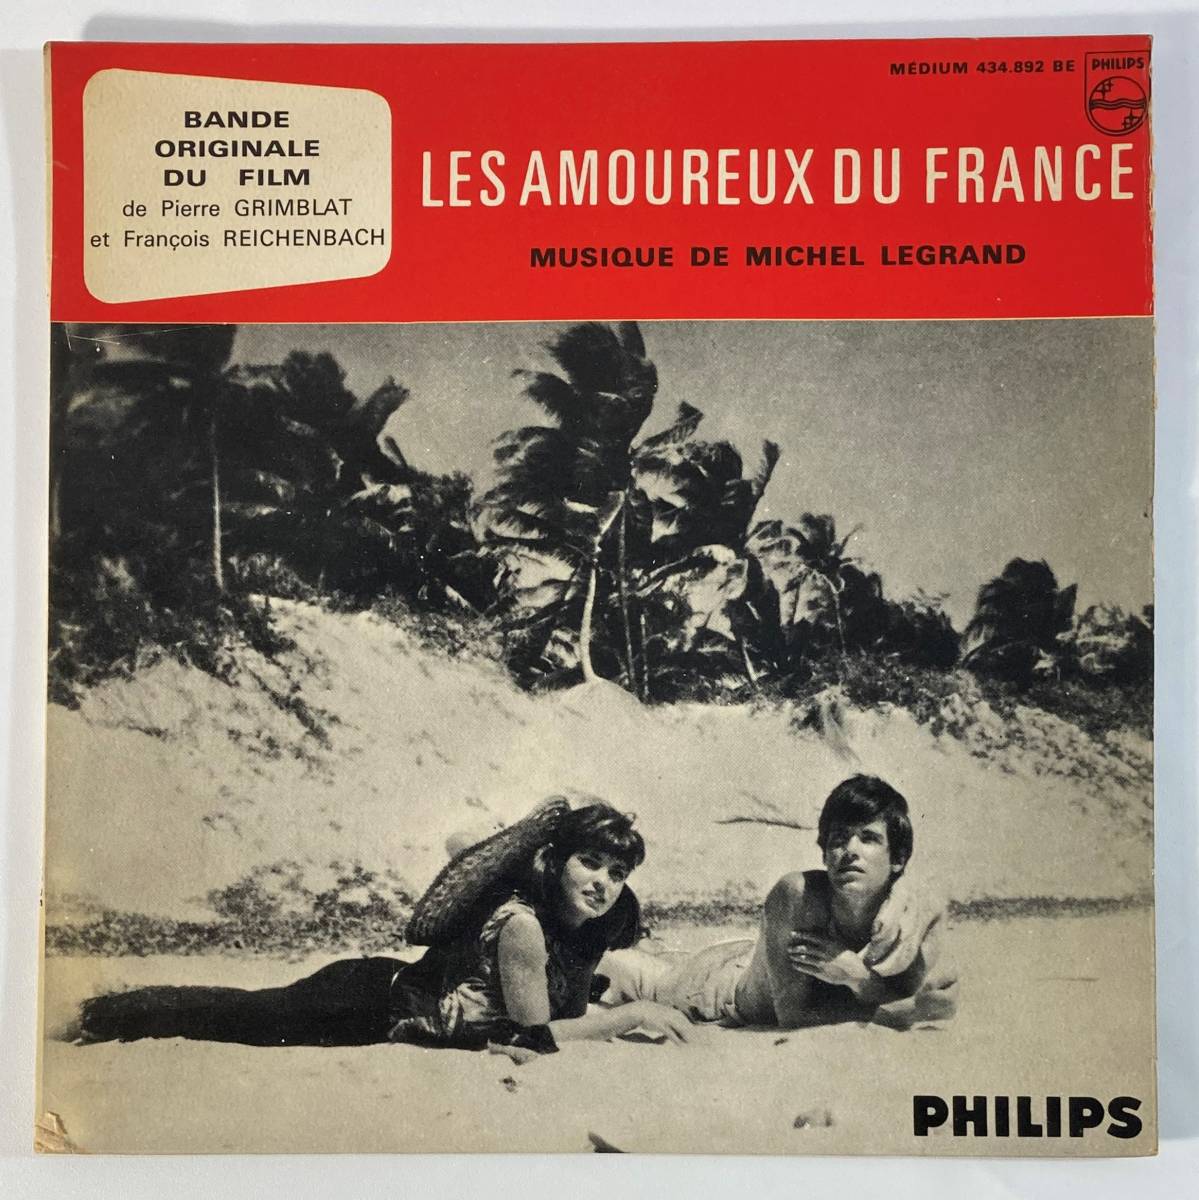 Les amourex du france (1963) Michel * legrand . запись EP Philips 434.892 BE